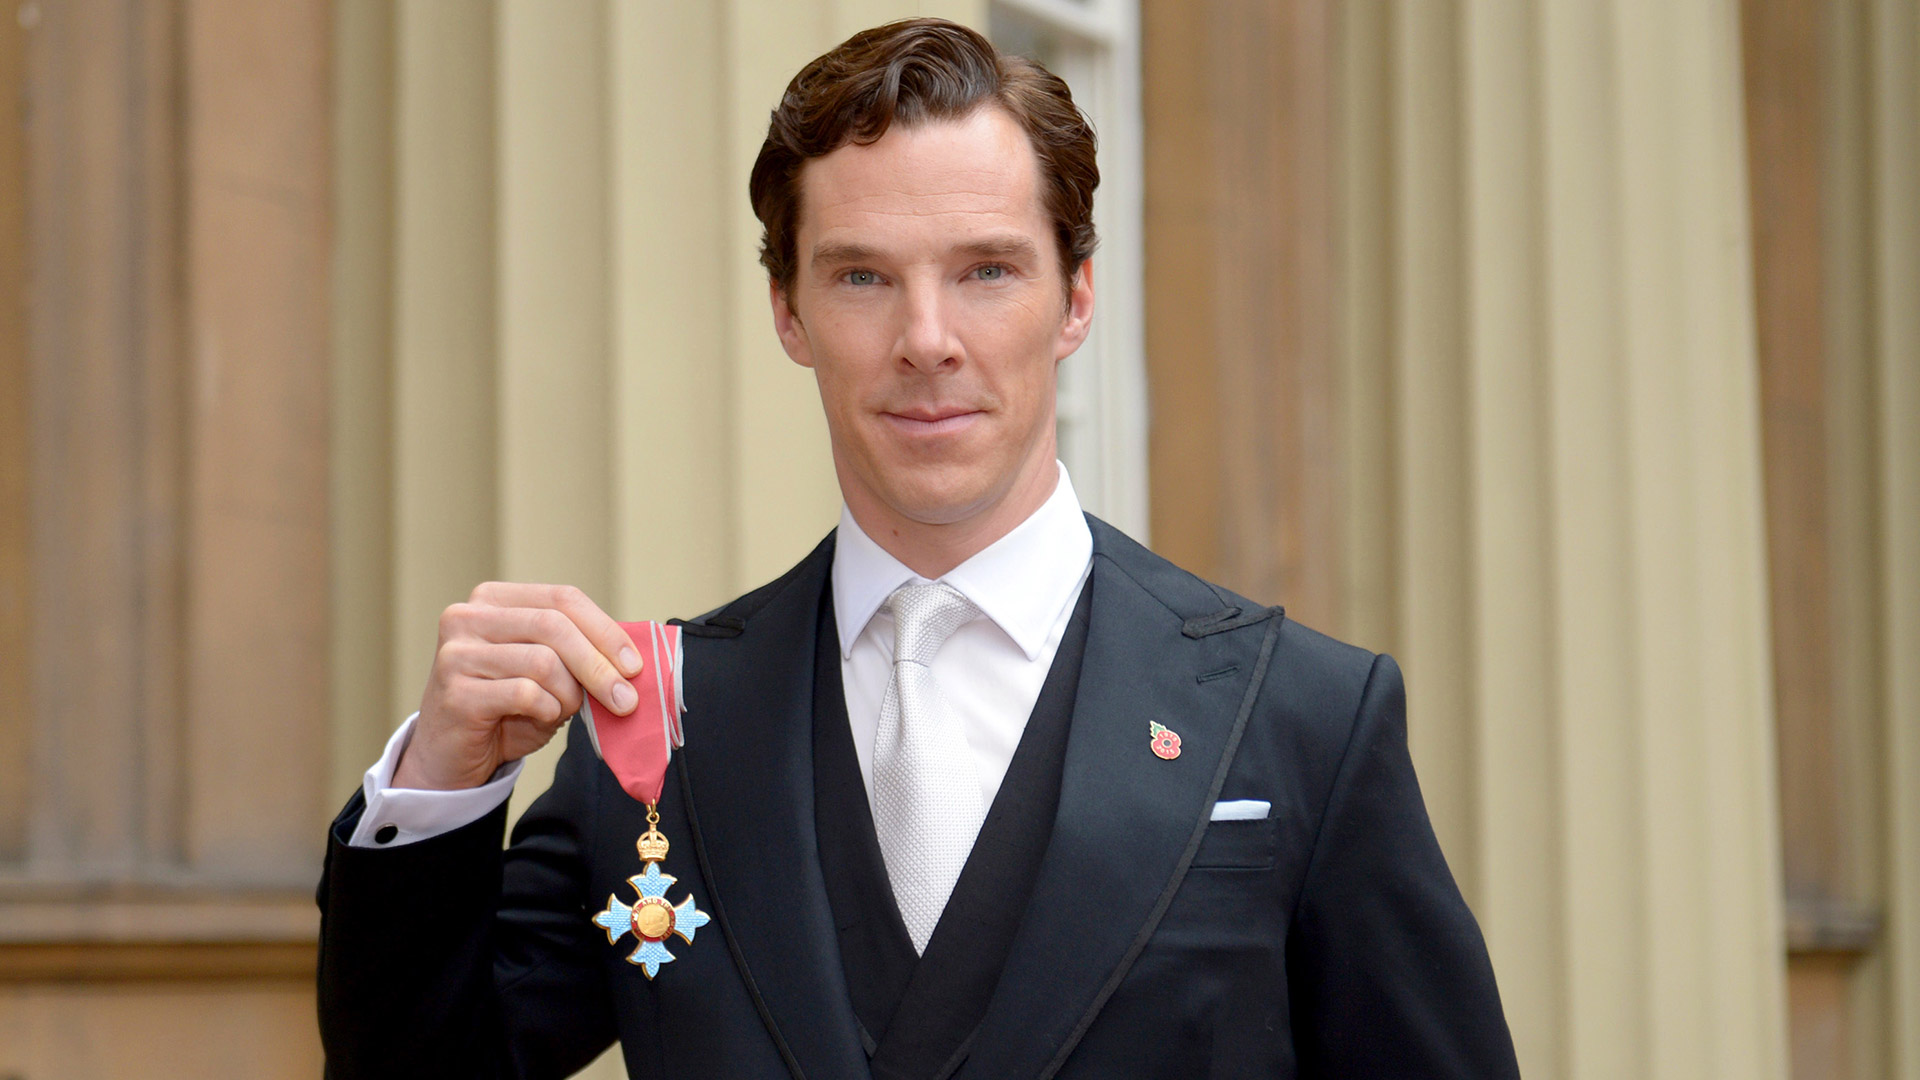 Cumberbatch, en 2015, muestra la medalla que le entregó la Reina Elizabeth II por sus servicios para el arte y la filantropía. Ese año también fue padre por primera vez (Photo by Anthony Devlin - WPA Pool / Getty Images)